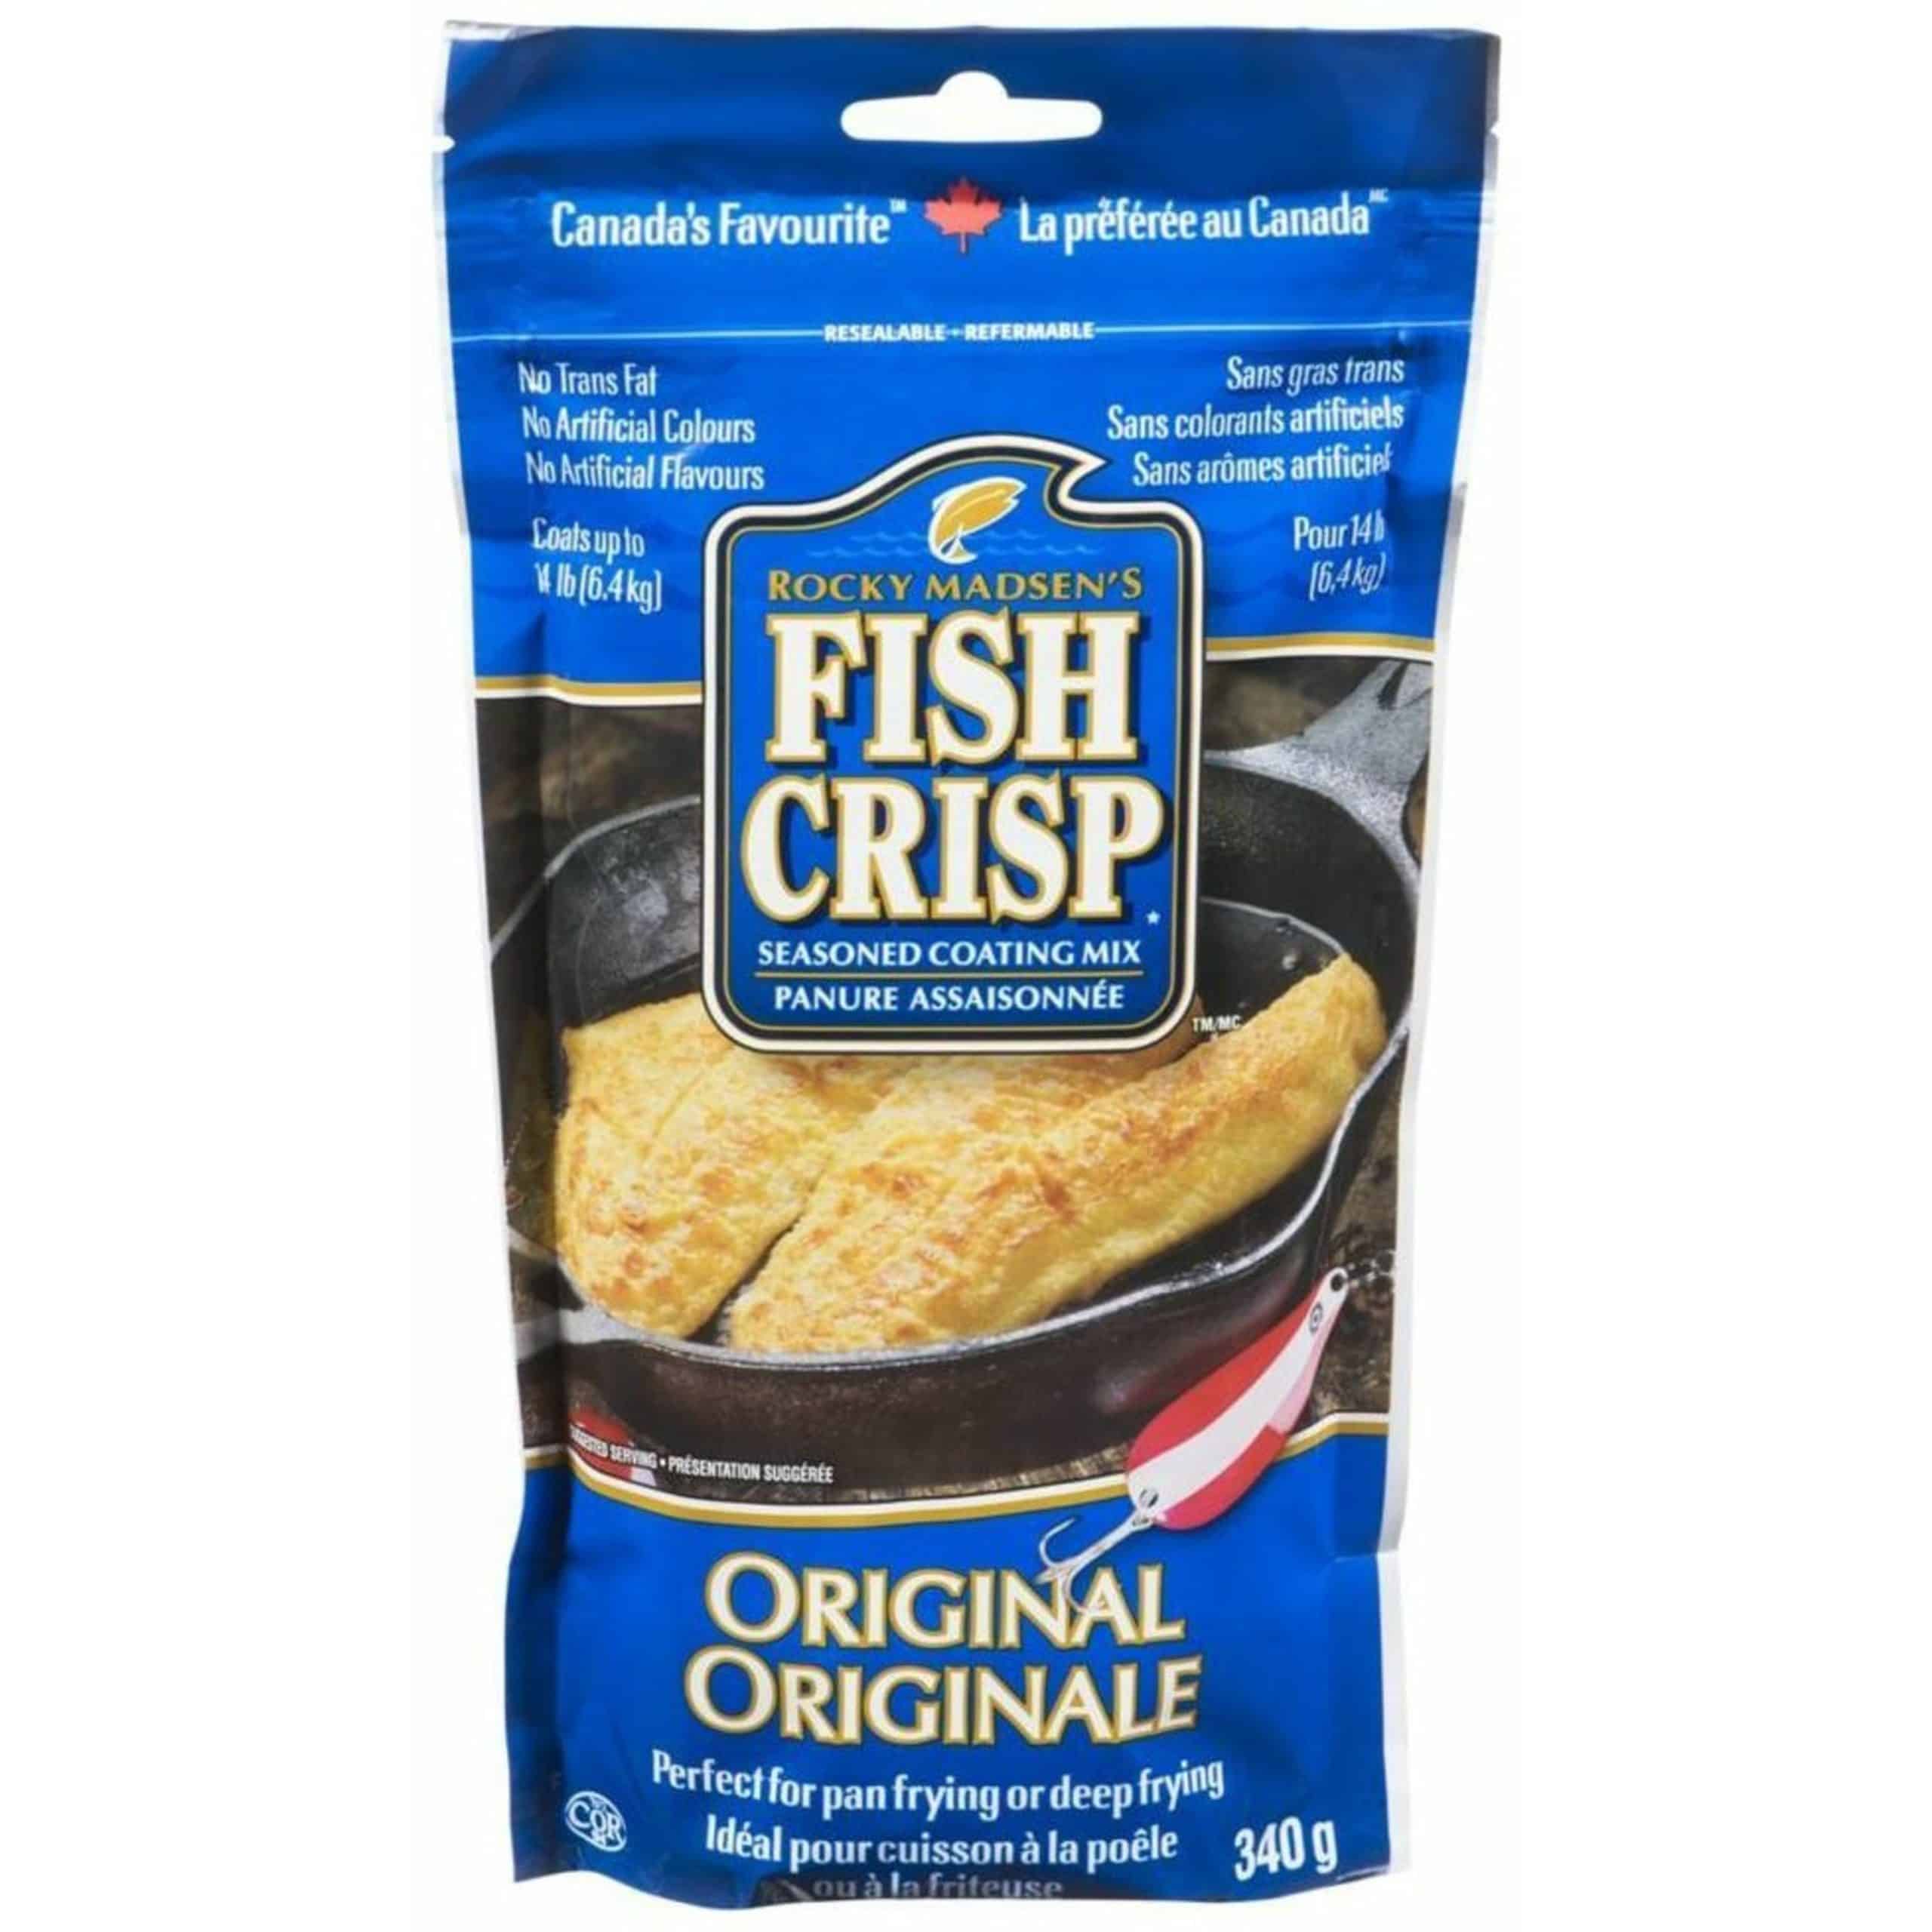 Fish Crisp Original